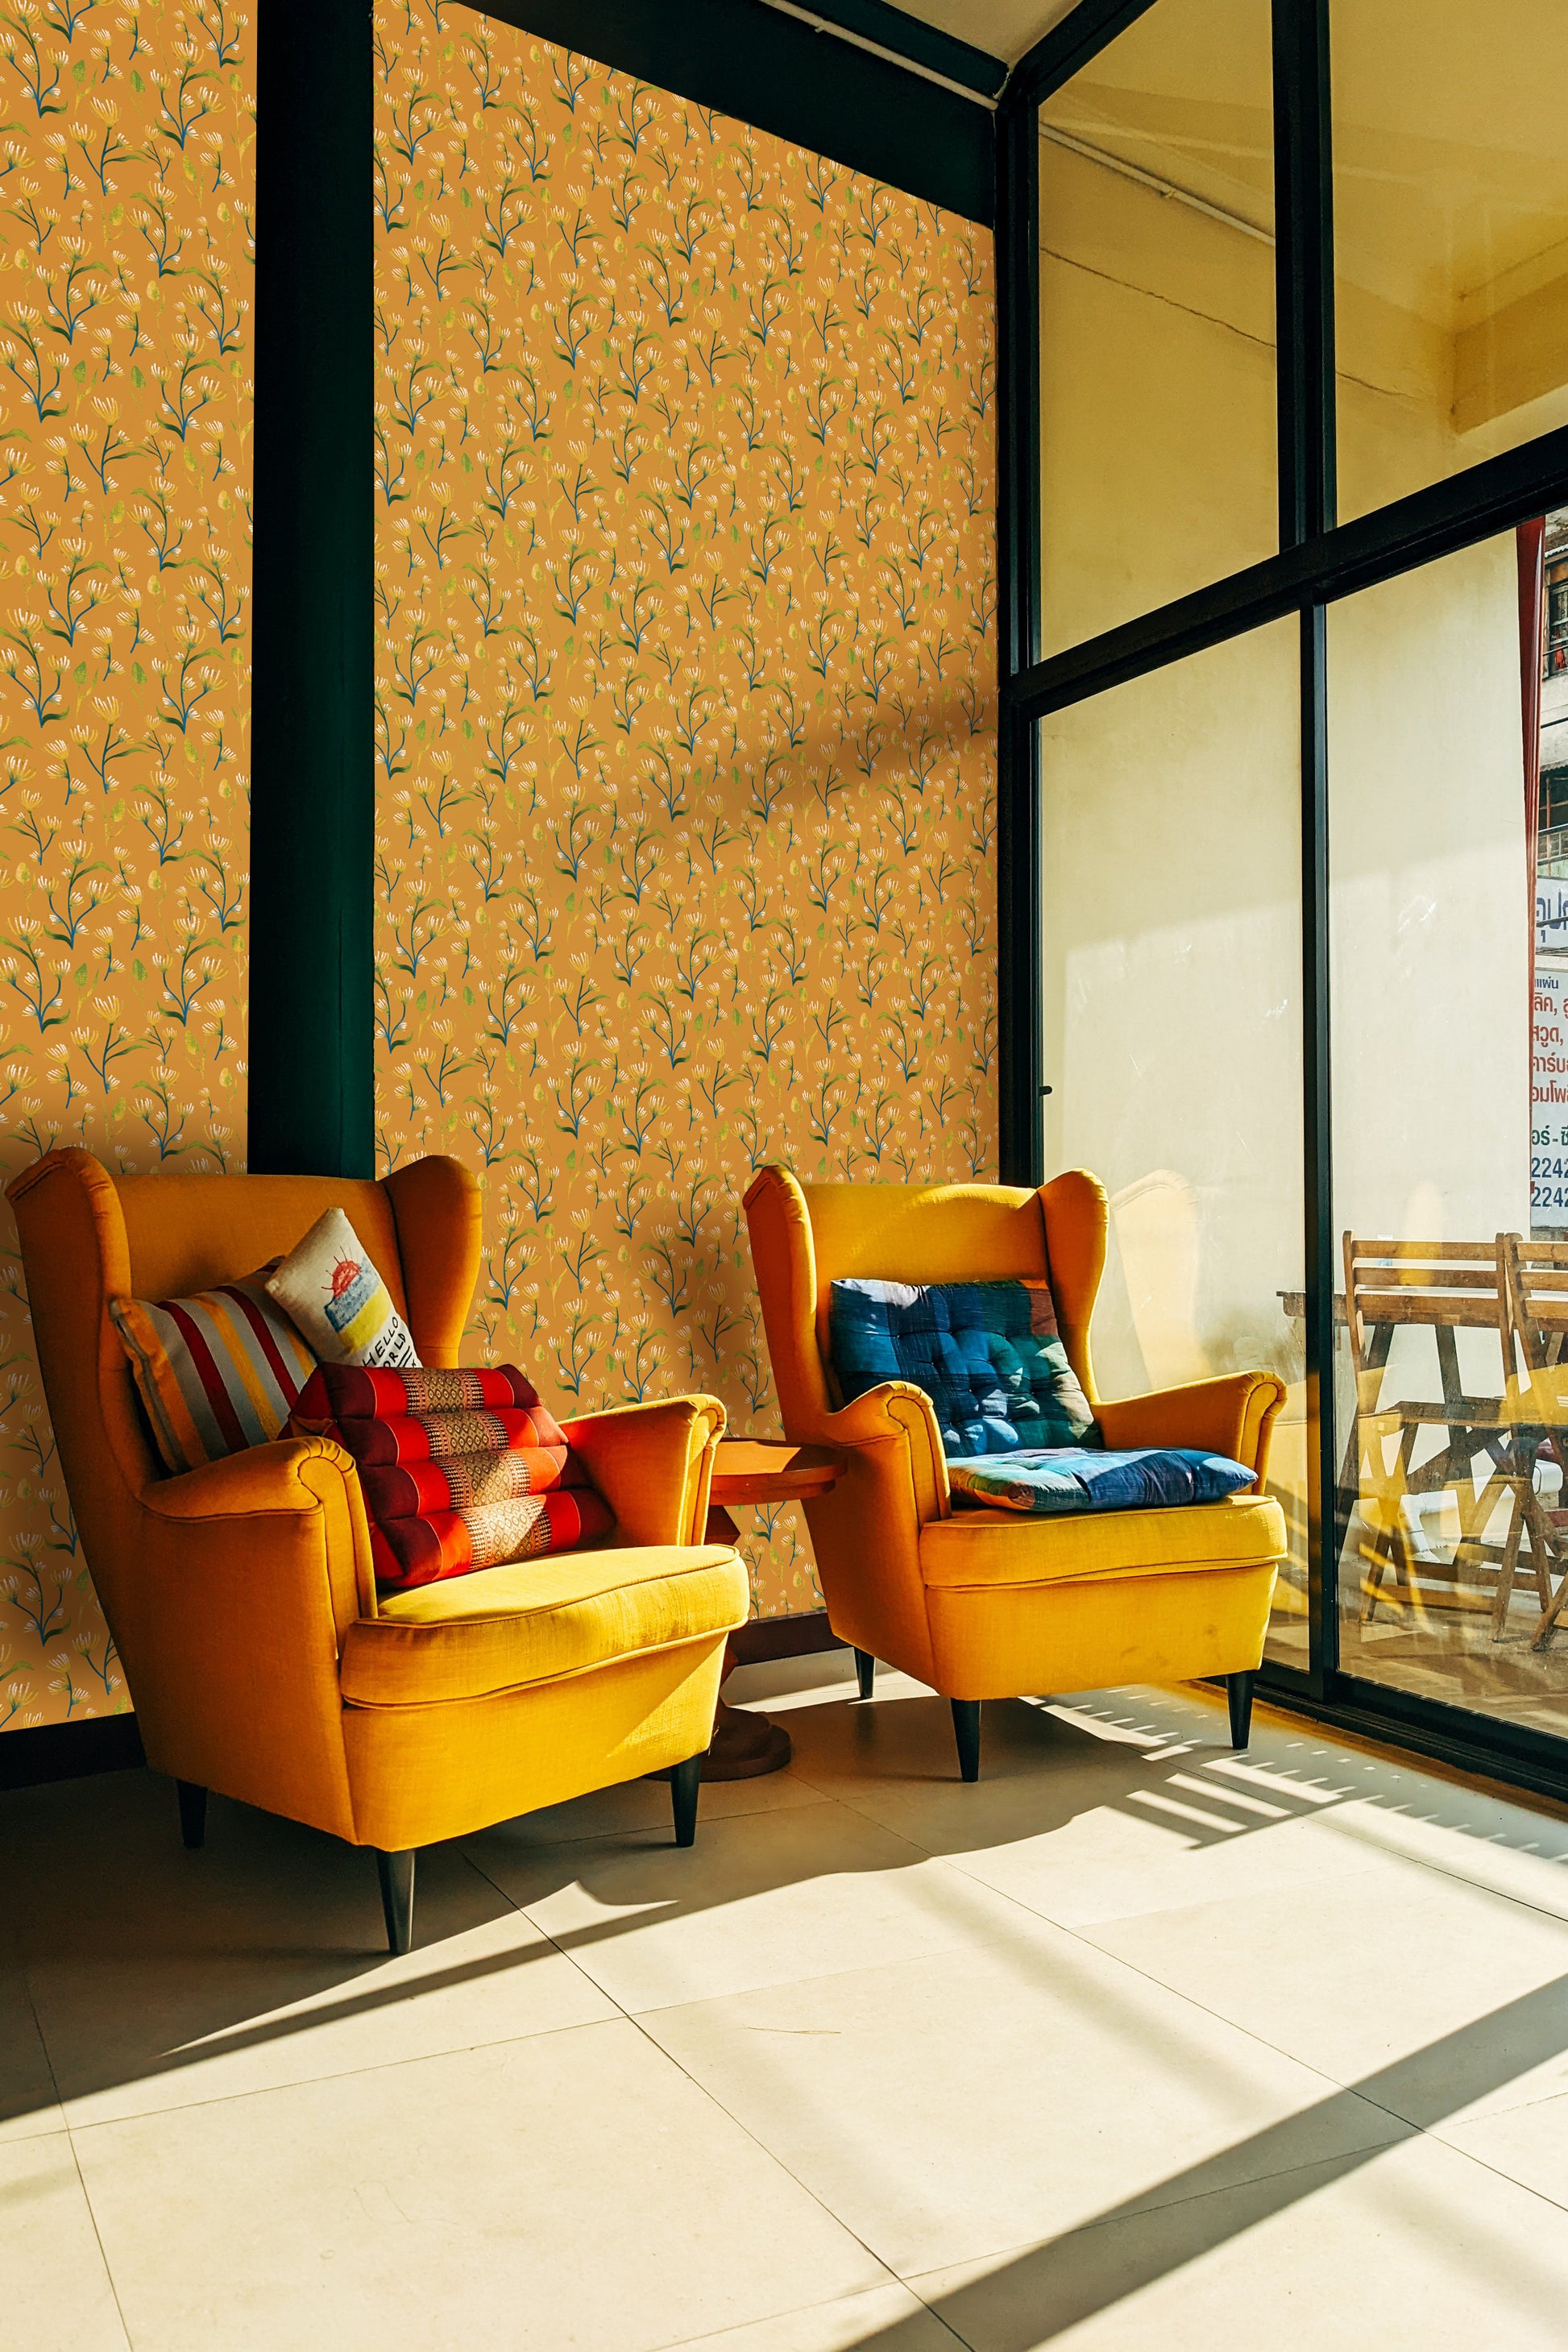 Earthy Yellow Abstract Flower Peel & Stick Wallpaper in a window side sitting room| RollsRolla